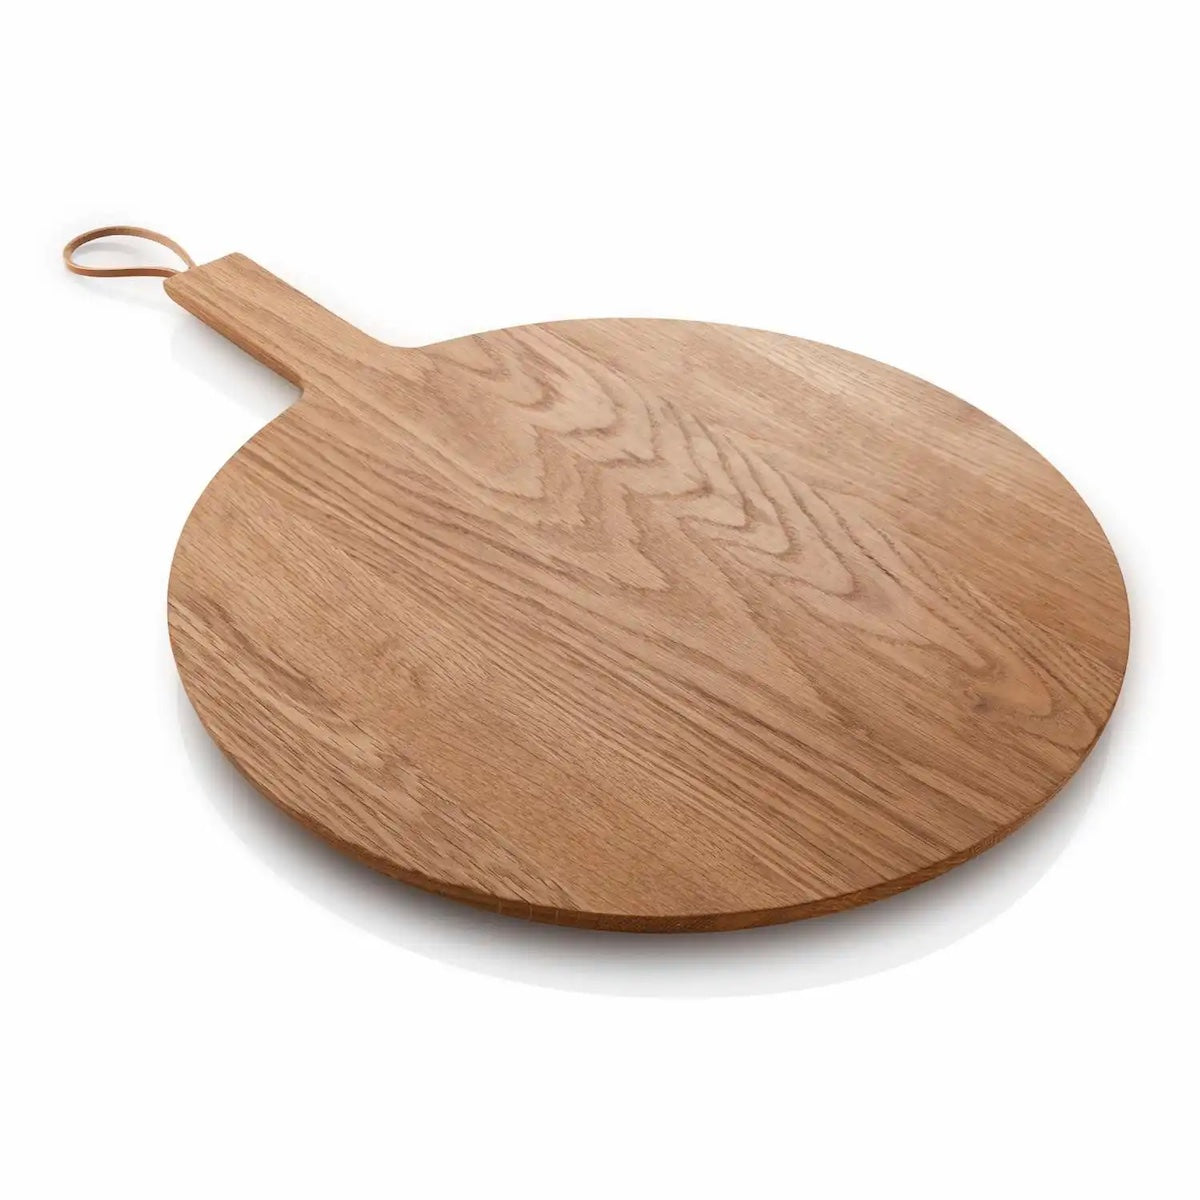 Nordic Kitchen Wooden Cutting Board Round